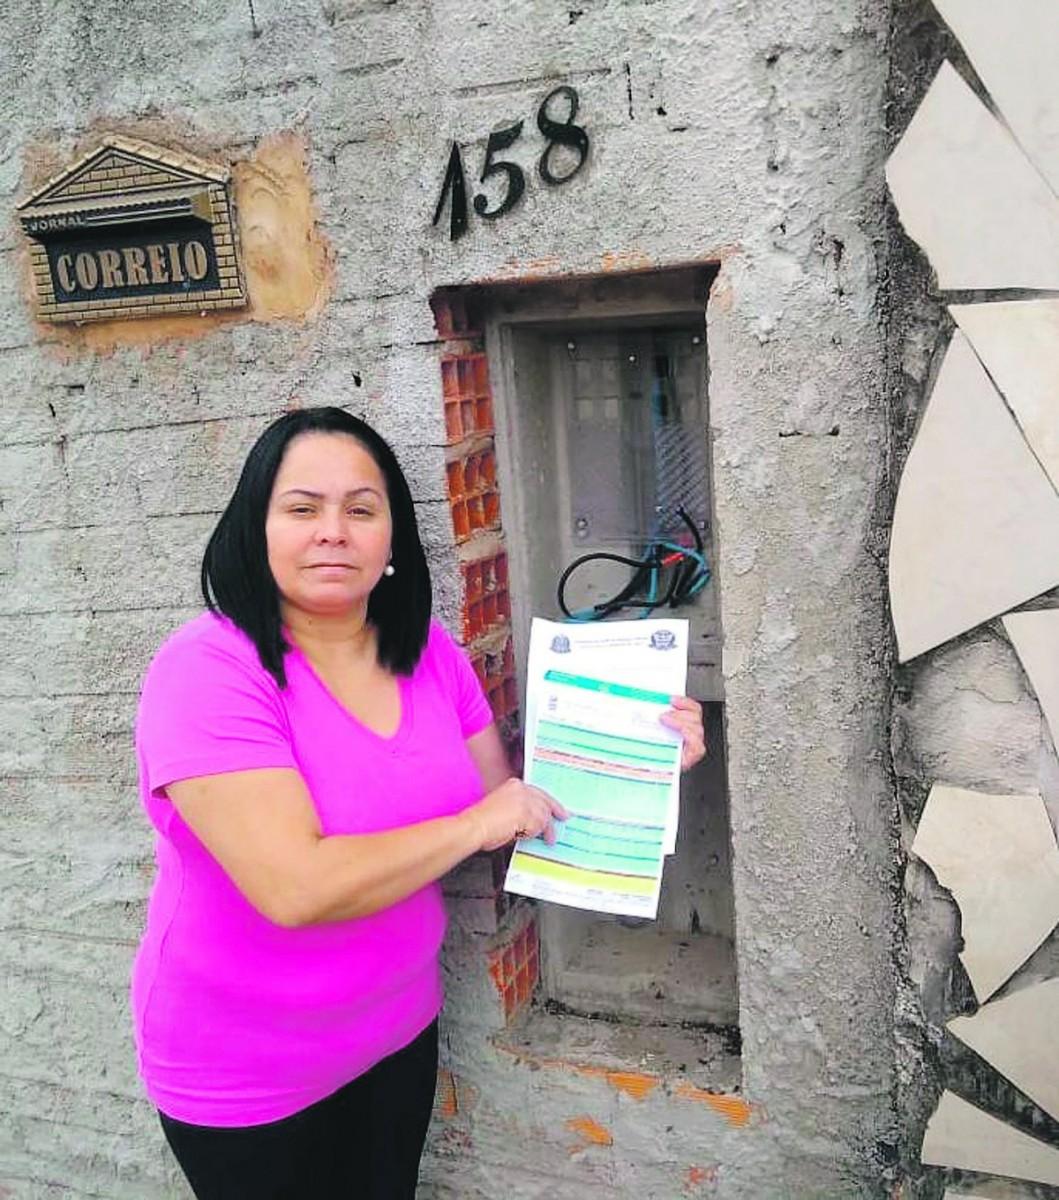 A recepcionista Rosa Amélia mostra o boletim de ocorrência registrado na polícia, no local de onde o ladrão disfarçado arrancou o relógio de força: um dia inteiro sem energia elétrica (Divulgação)